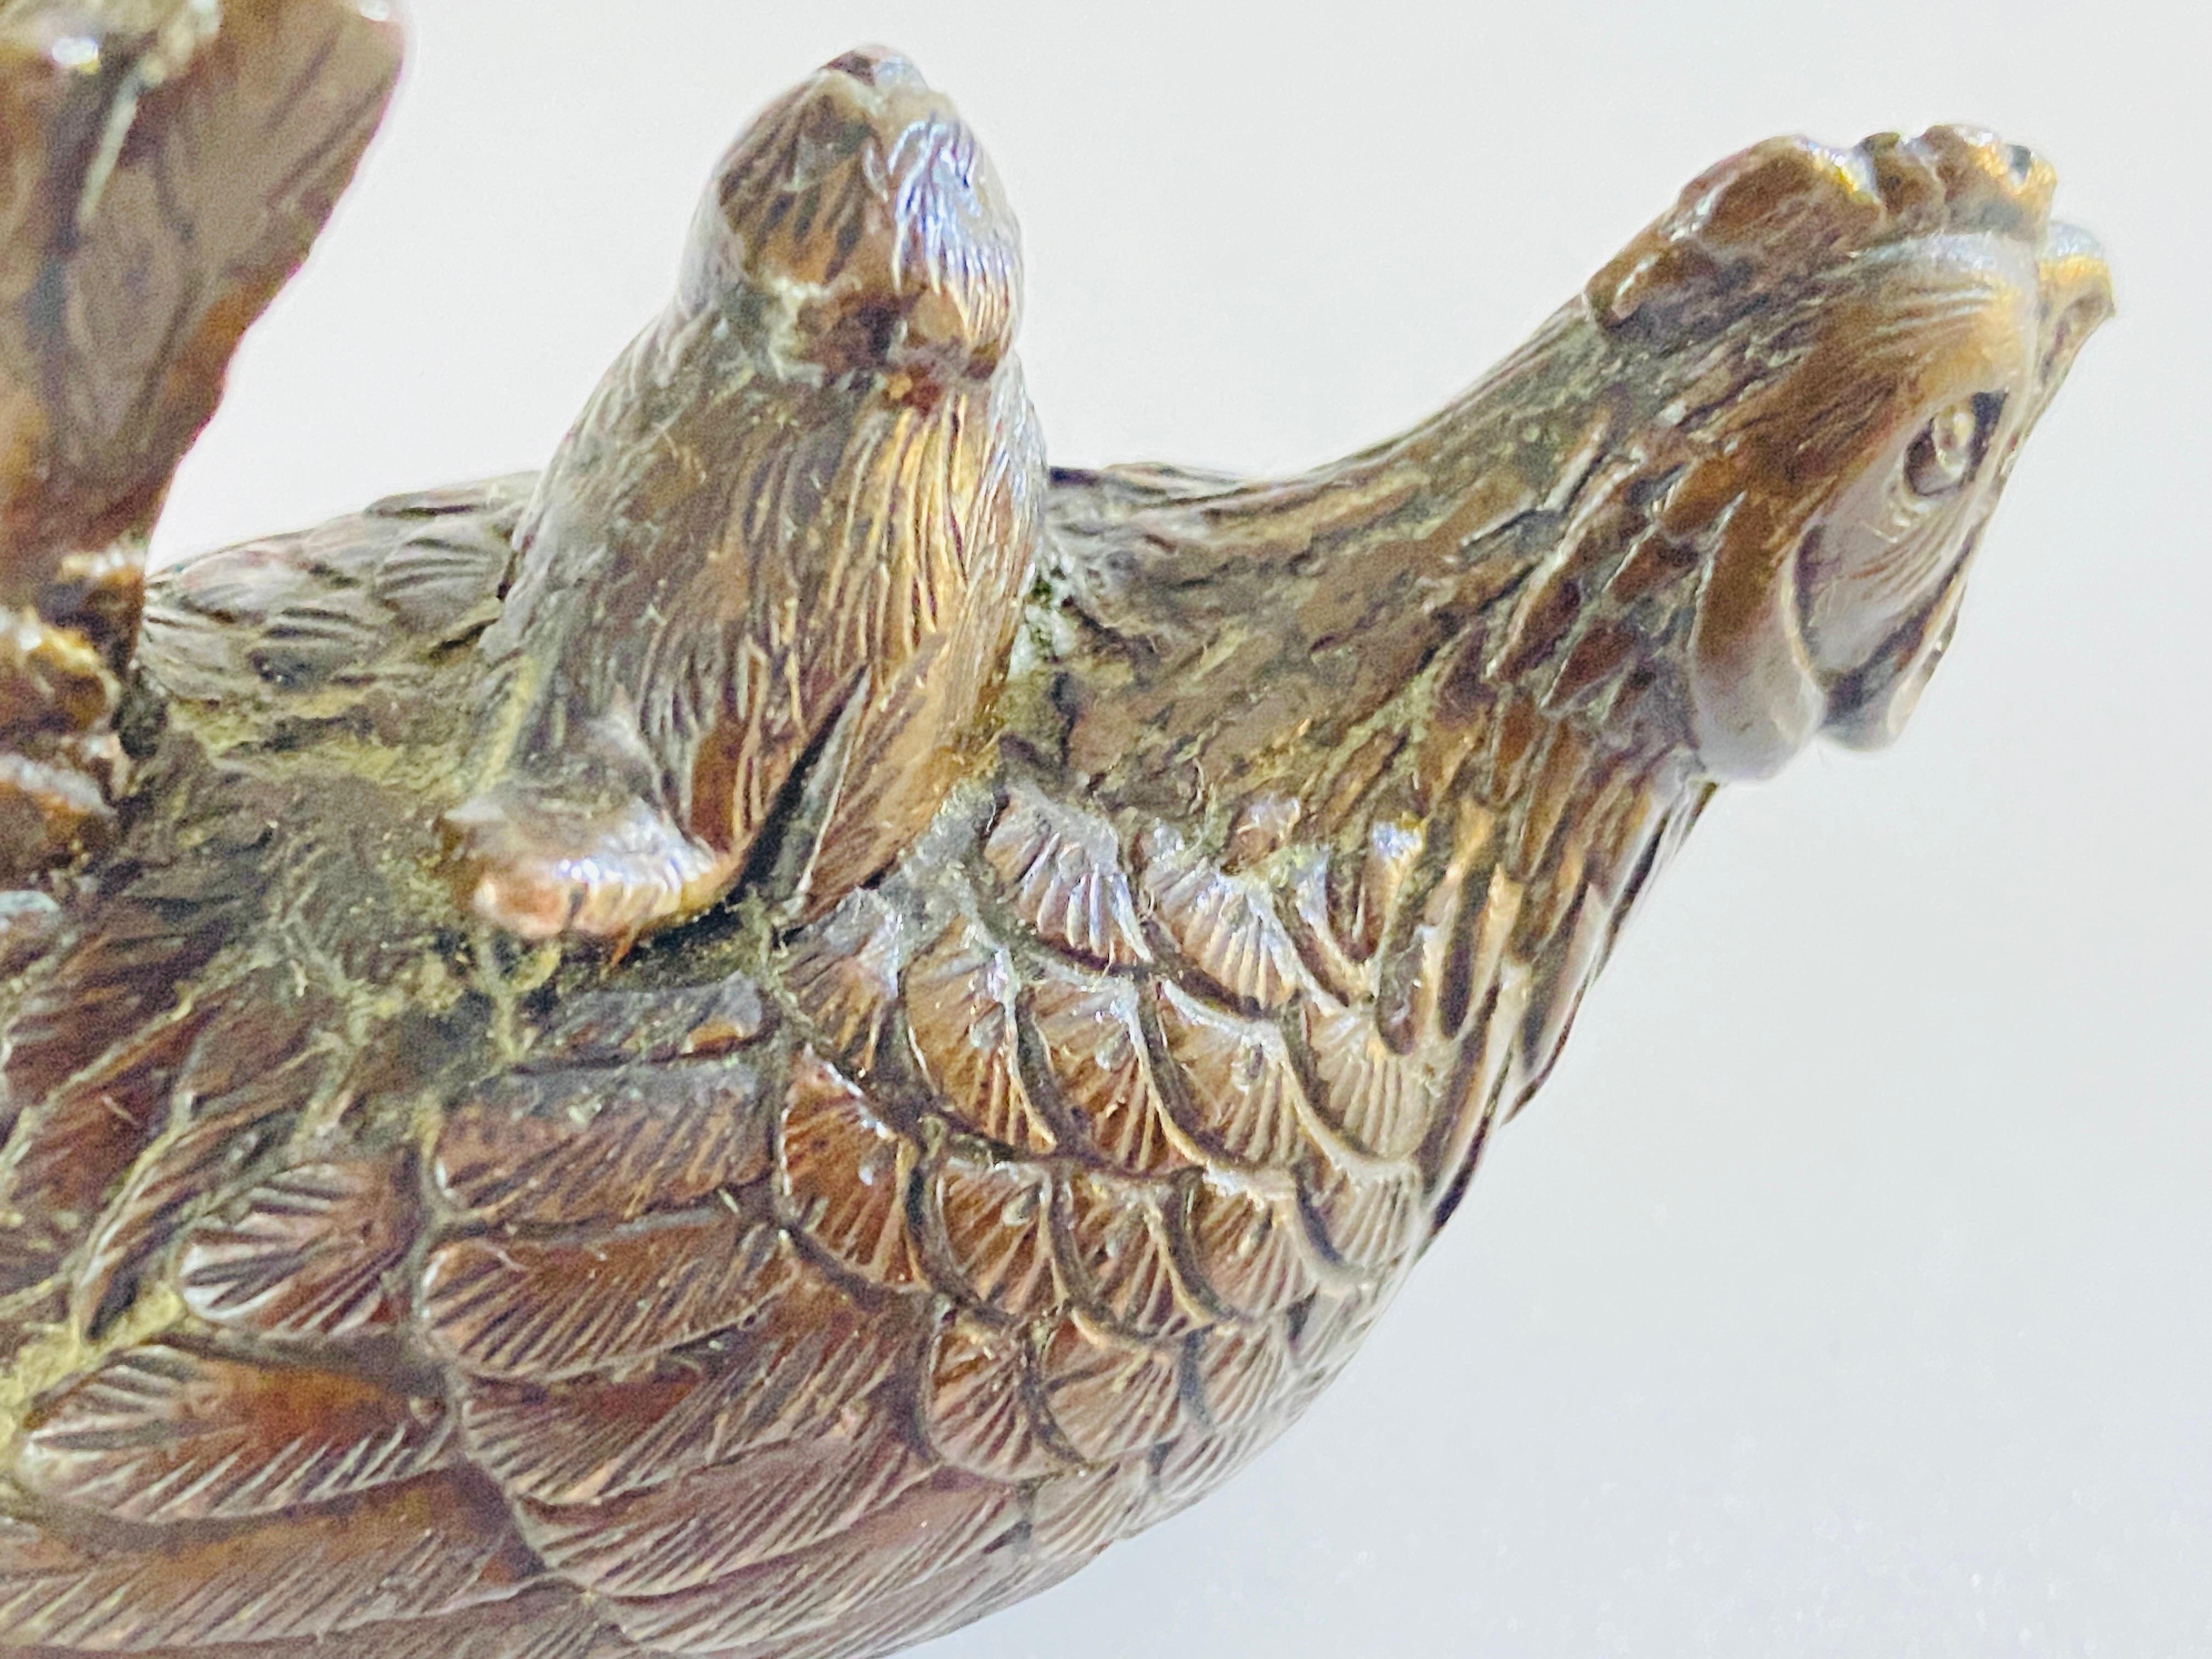 Satz von 3 Bronzen, die Katze, Huhn und Vögel darstellen. Die Objekte sind aus Bronze gefertigt. Diese Bronzen wurden in Frankreich in den 1900er Jahren hergestellt und sind typische Objekte aus dieser Zeit.